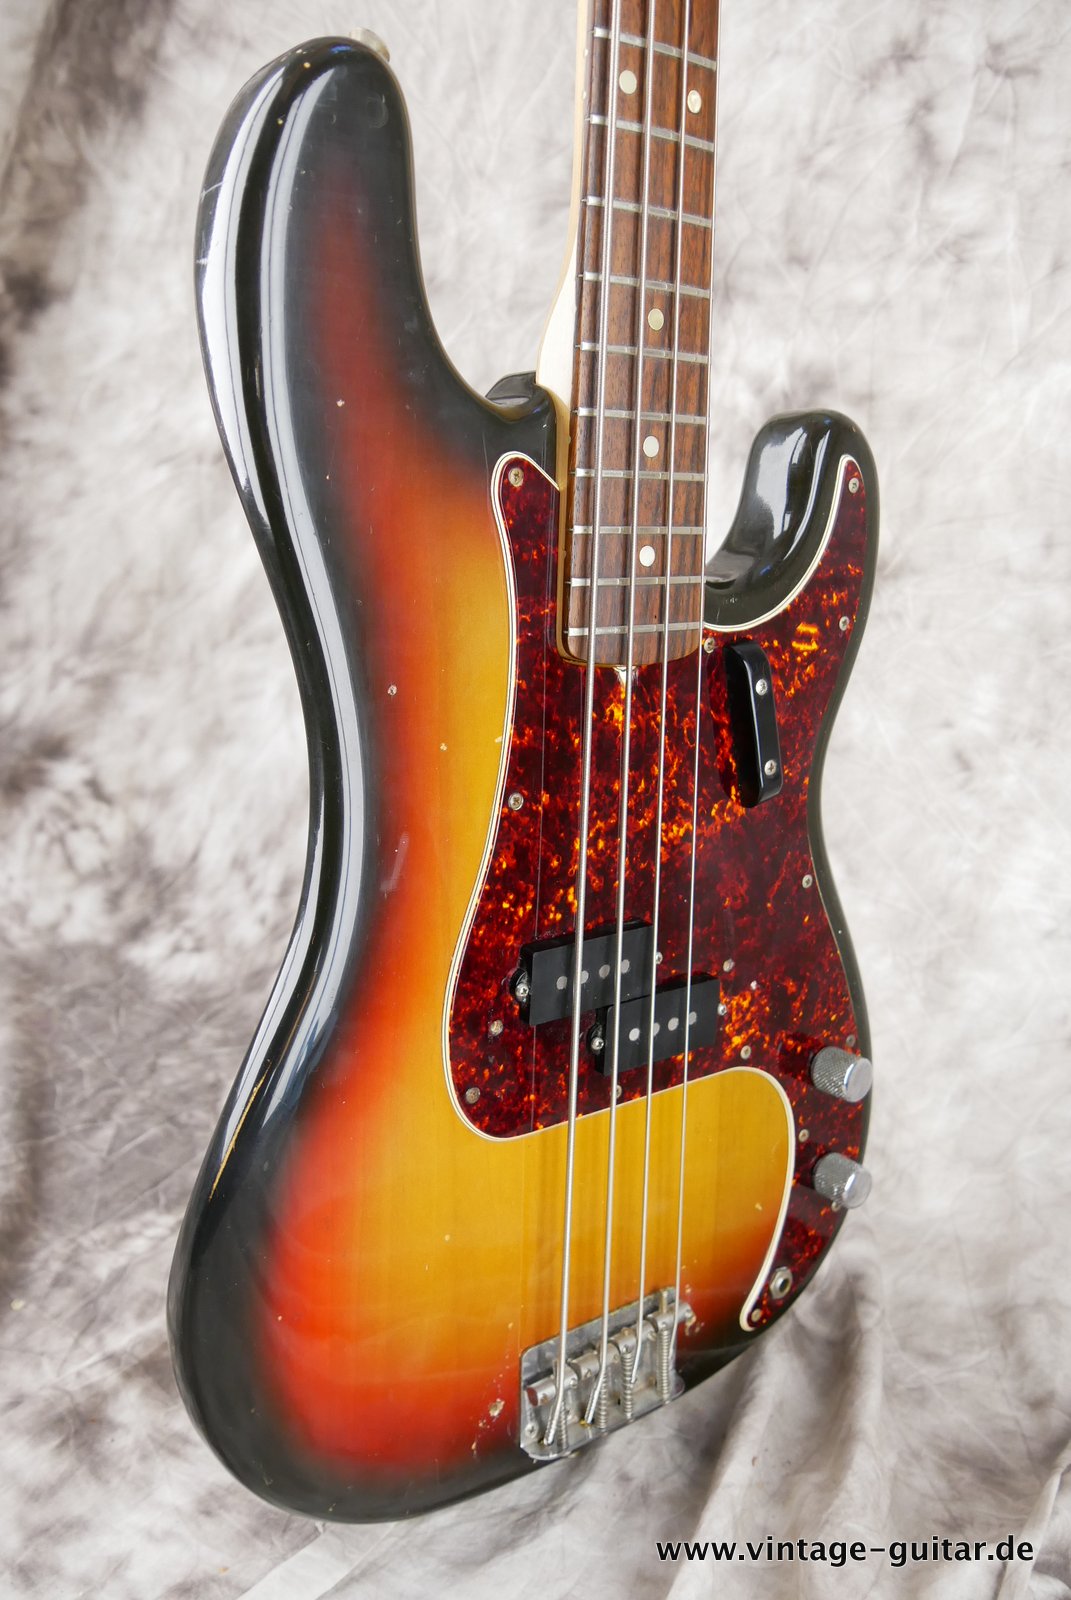 Fender-Precision-Bass-sunburst-1969-005.JPG